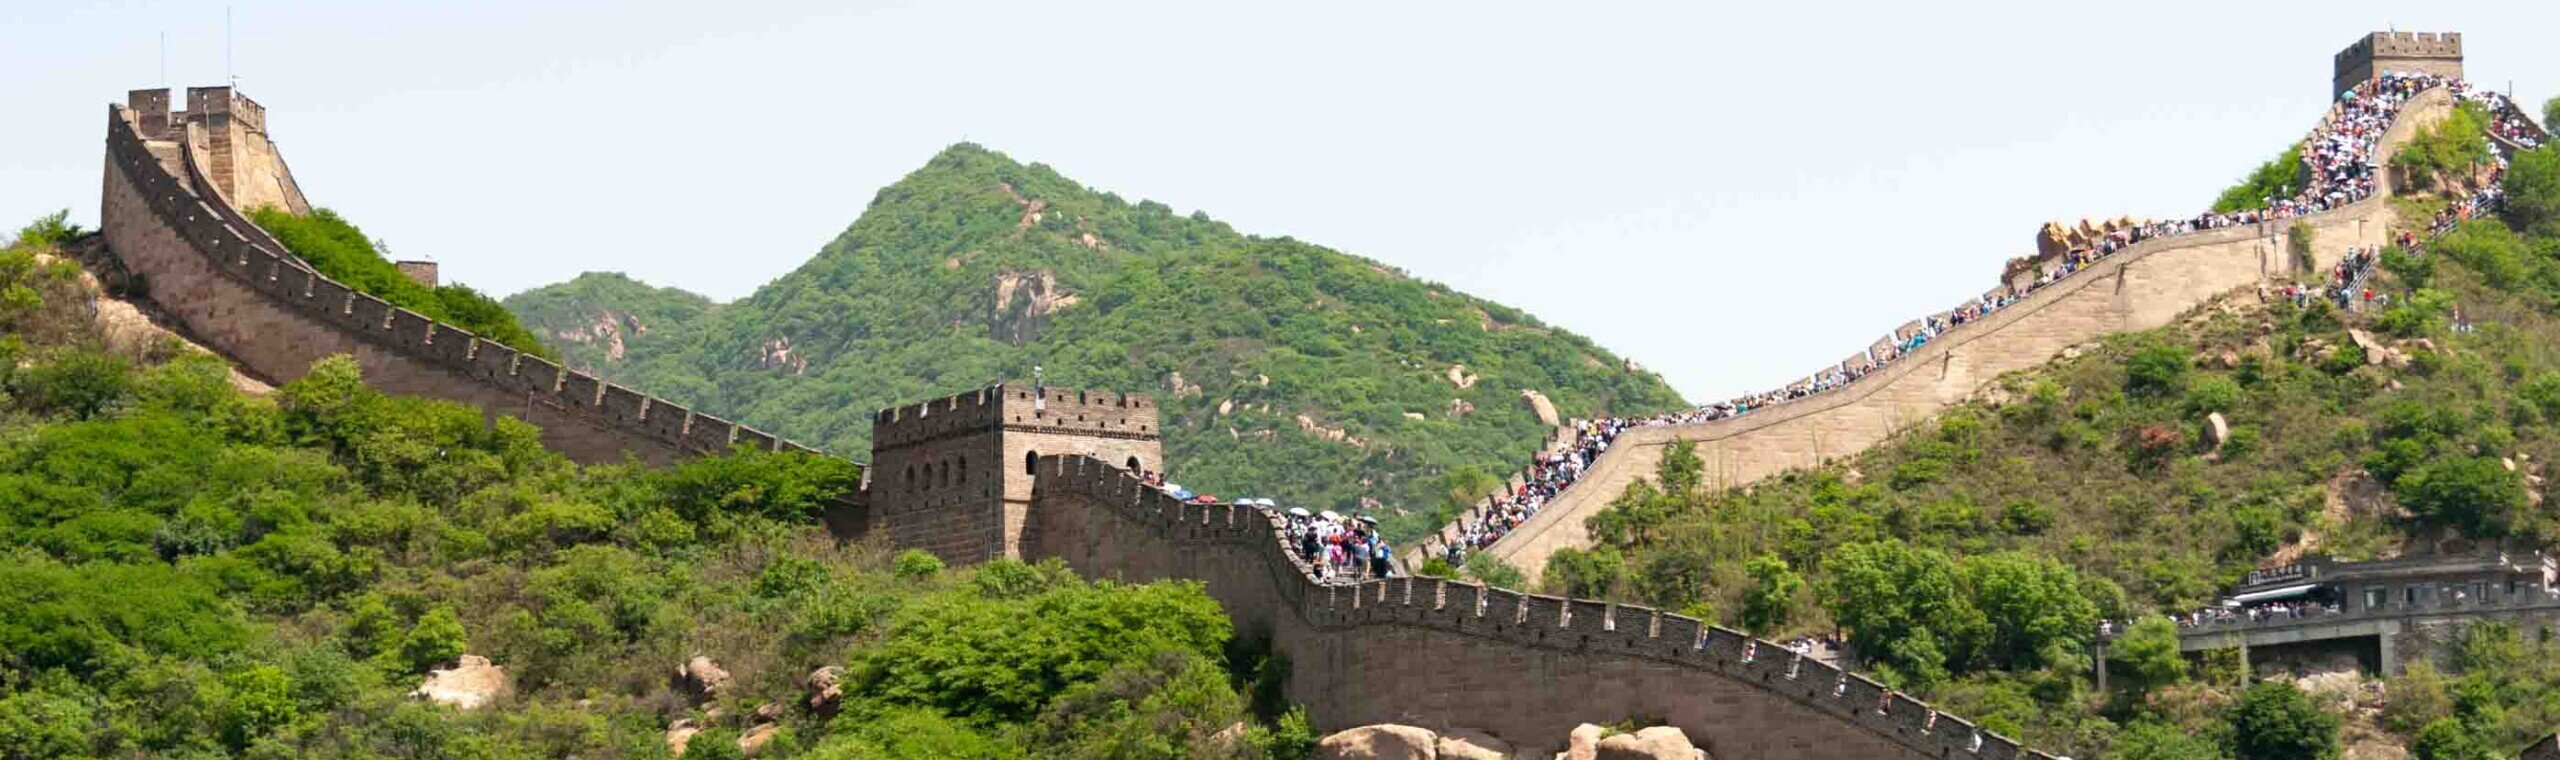 Una muraglia sulle montagne che sale o che scende con tre grandi torrioni.